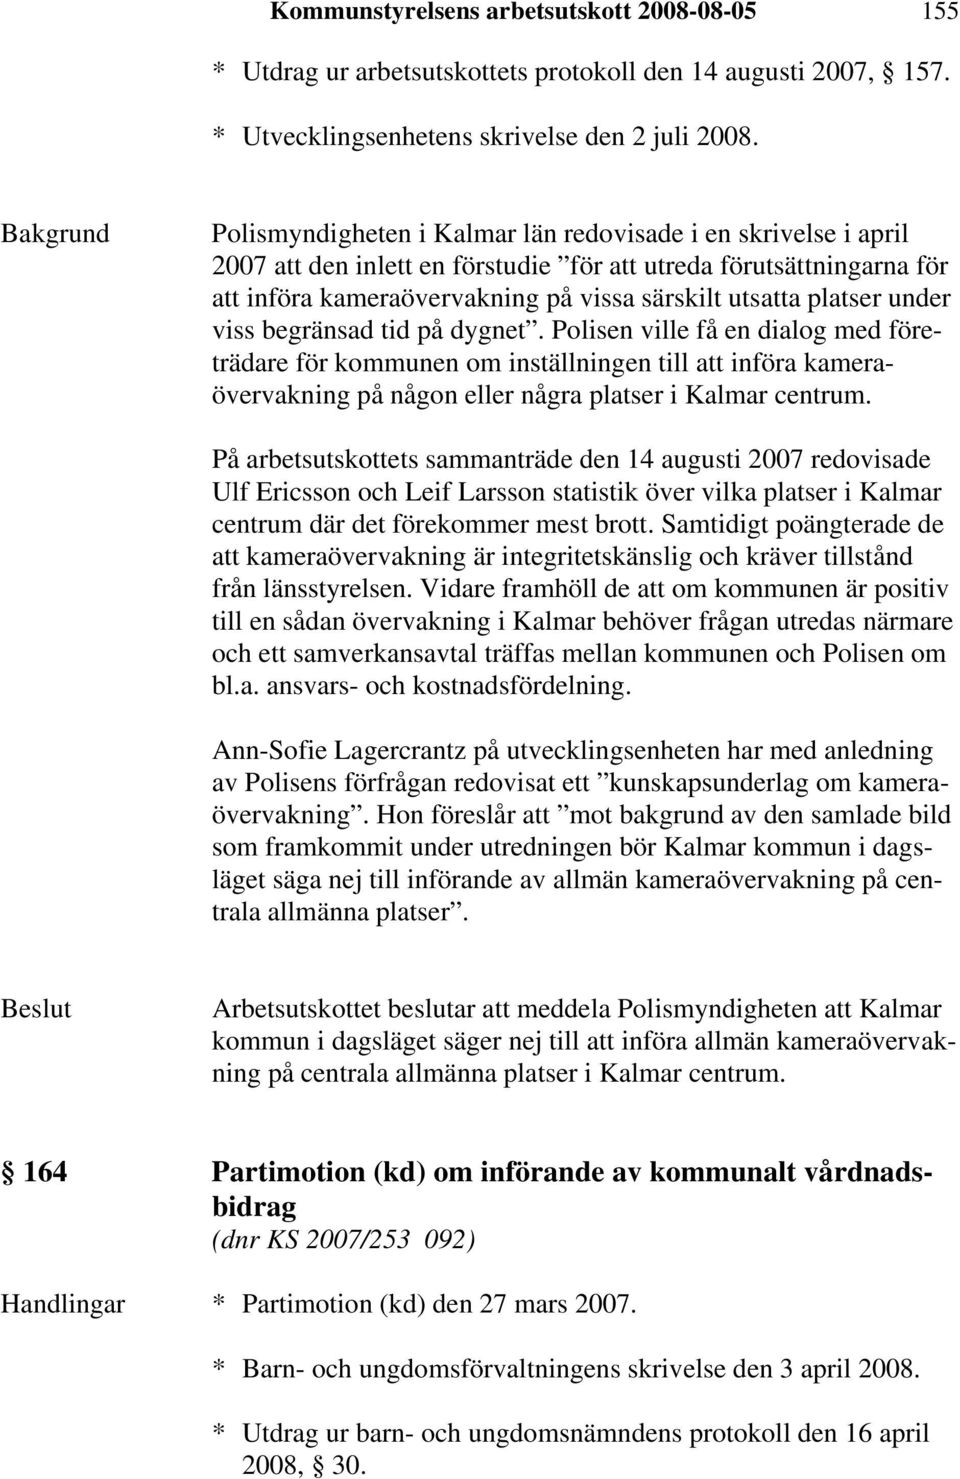 under viss begränsad tid på dygnet. Polisen ville få en dialog med företrädare för kommunen om inställningen till att införa kameraövervakning på någon eller några platser i Kalmar centrum.